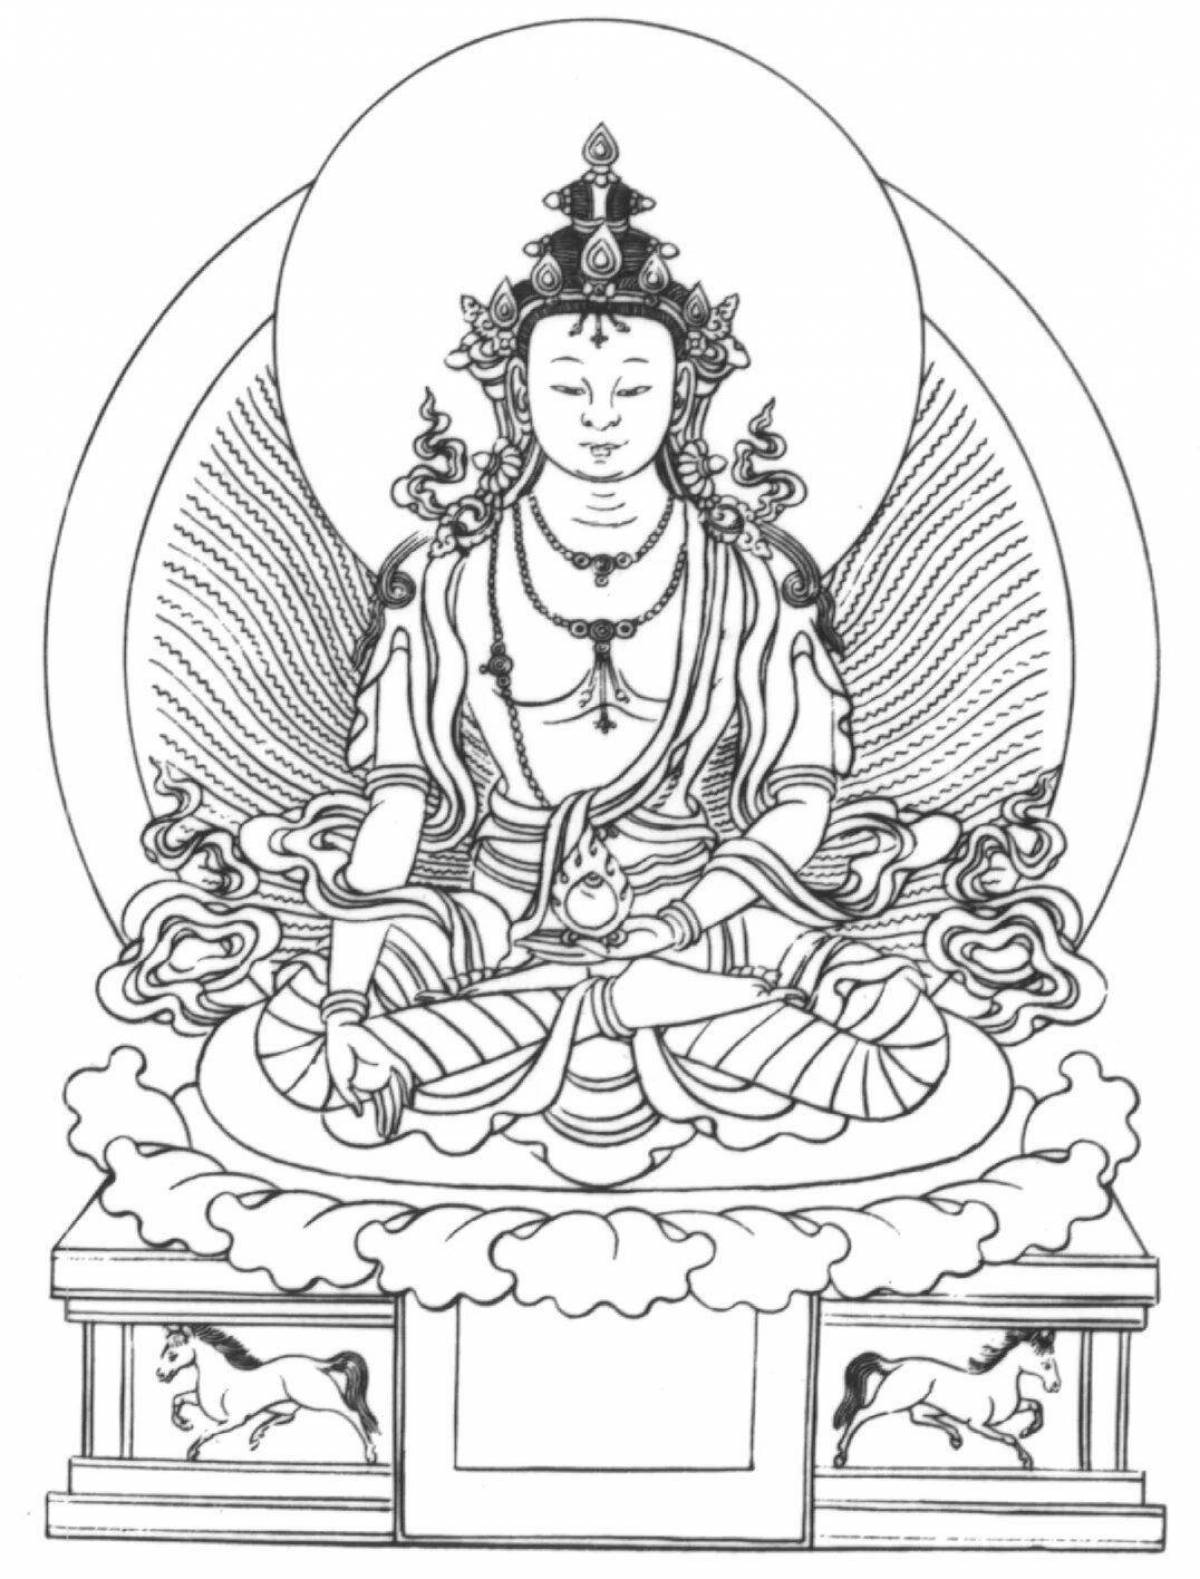 Росписи на темы буддийской мифологии. Индийский Будда Шакьямуни. Ратнасамбхава Будда. Будда Шакьямуни рисунок. Ратнасамбхава Будда изображения.